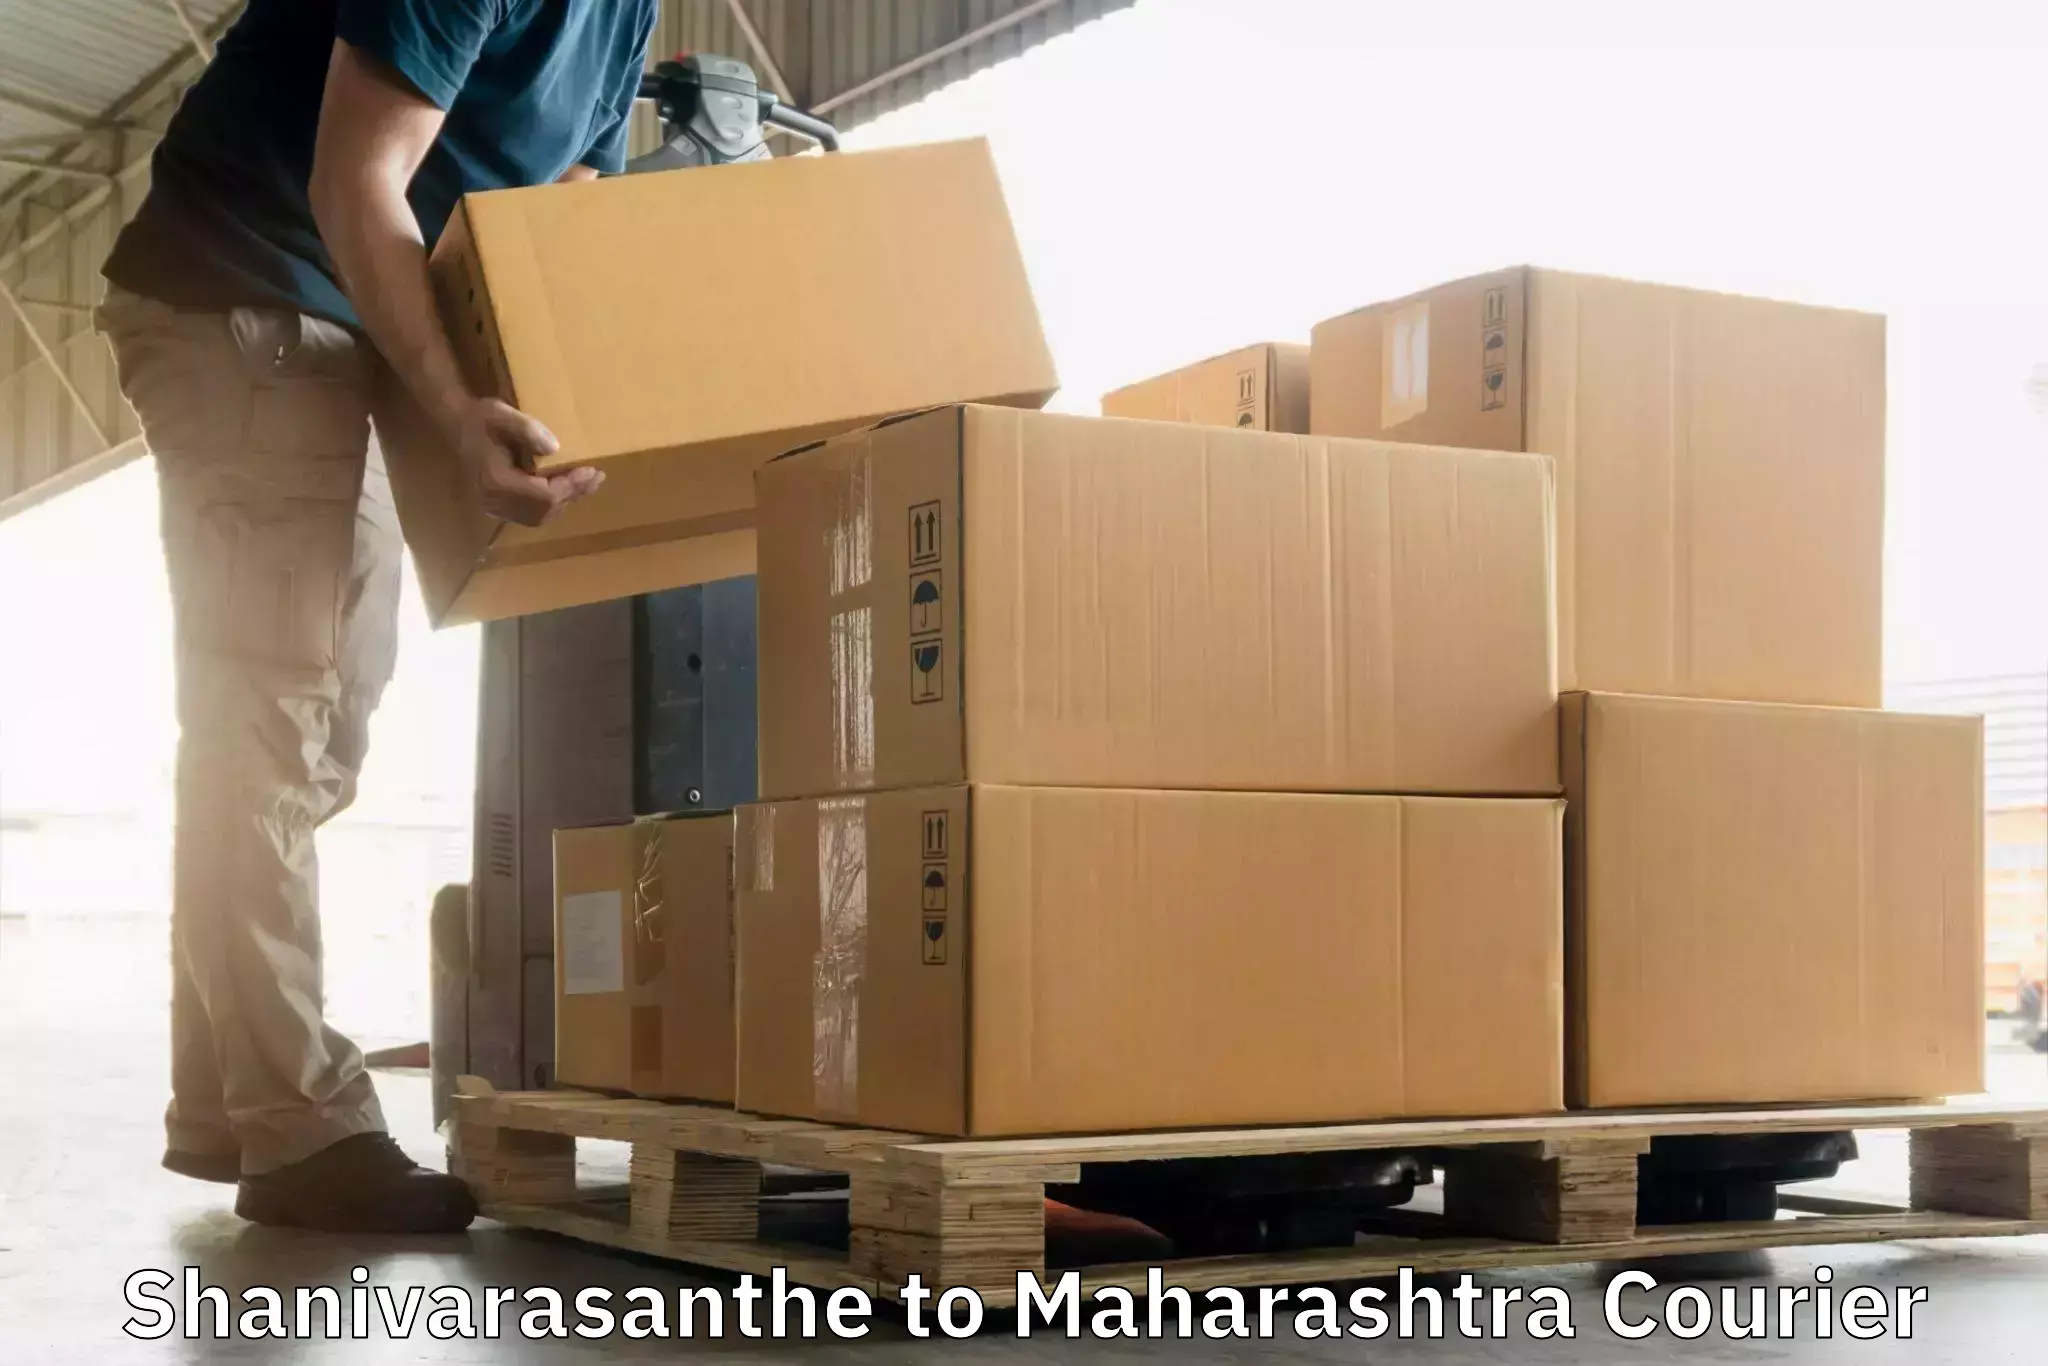 Courier service comparison Shanivarasanthe to Pen Raigad